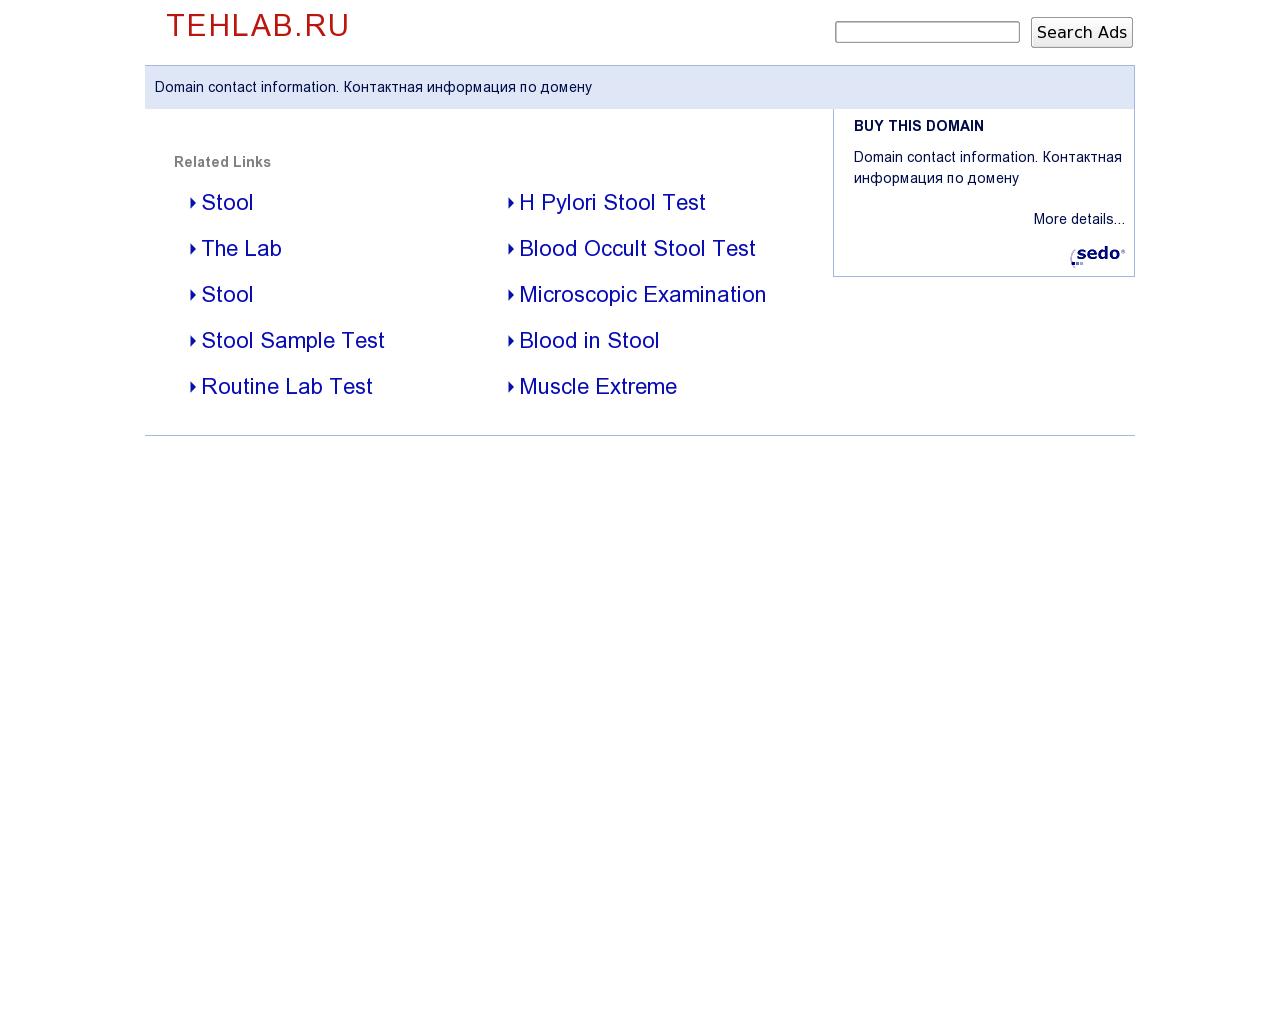 Изображение сайта tehlab.ru в разрешении 1280x1024